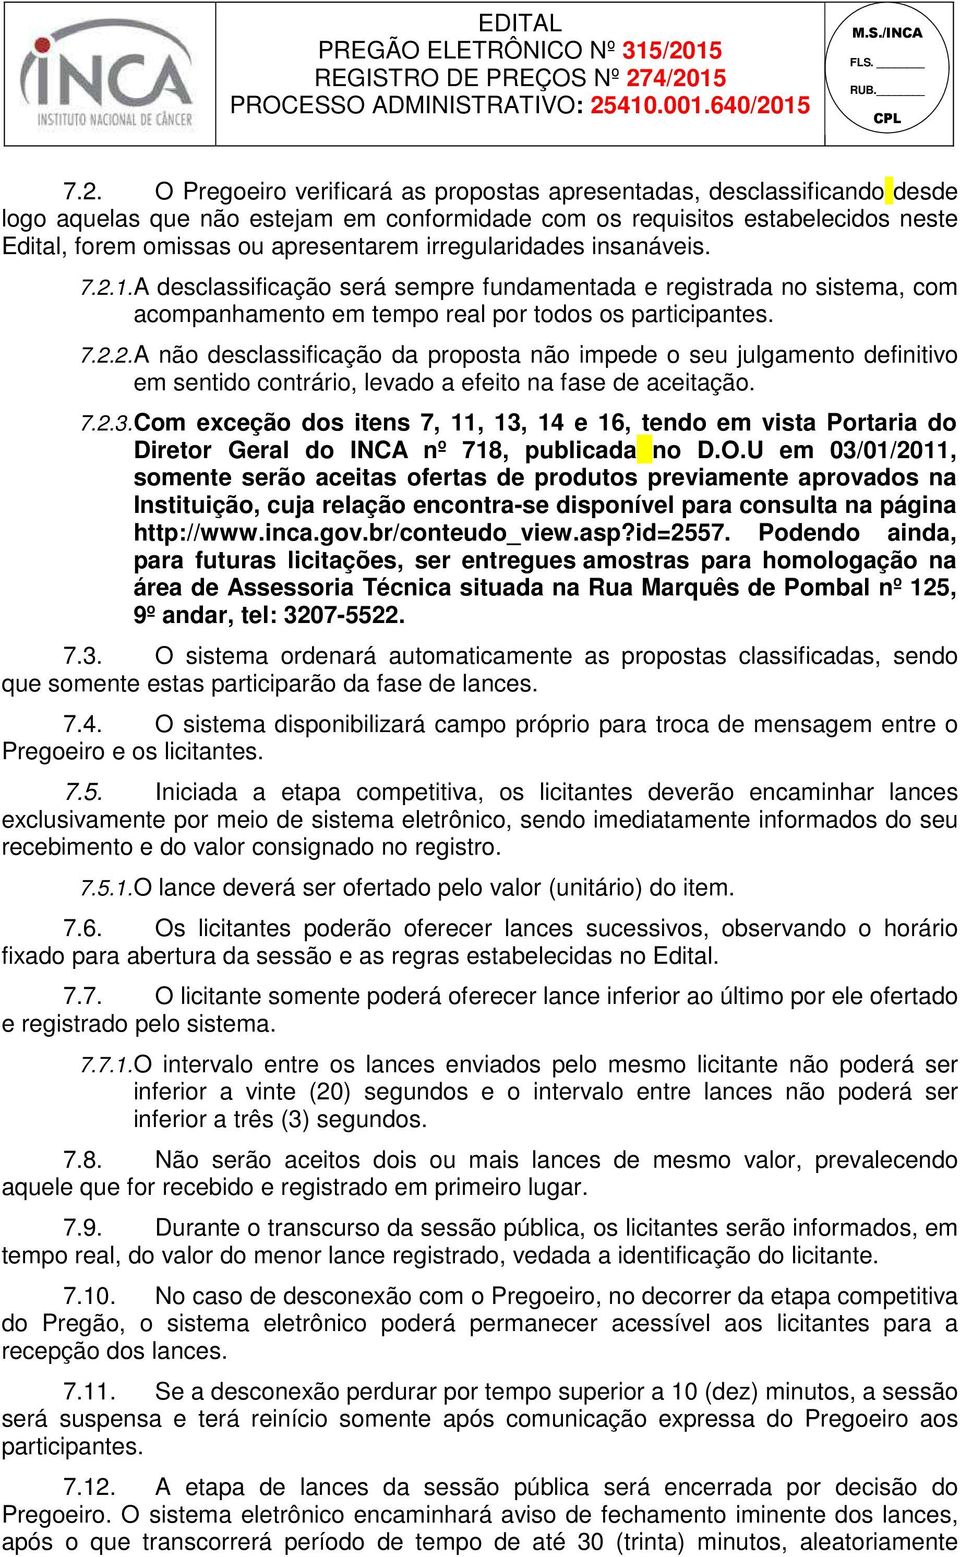 7.2.3. Com exceção dos itens 7, 11, 13, 14 e 16, tendo em vista Portaria do Diretor Geral do INCA nº 718, publicada no D.O.